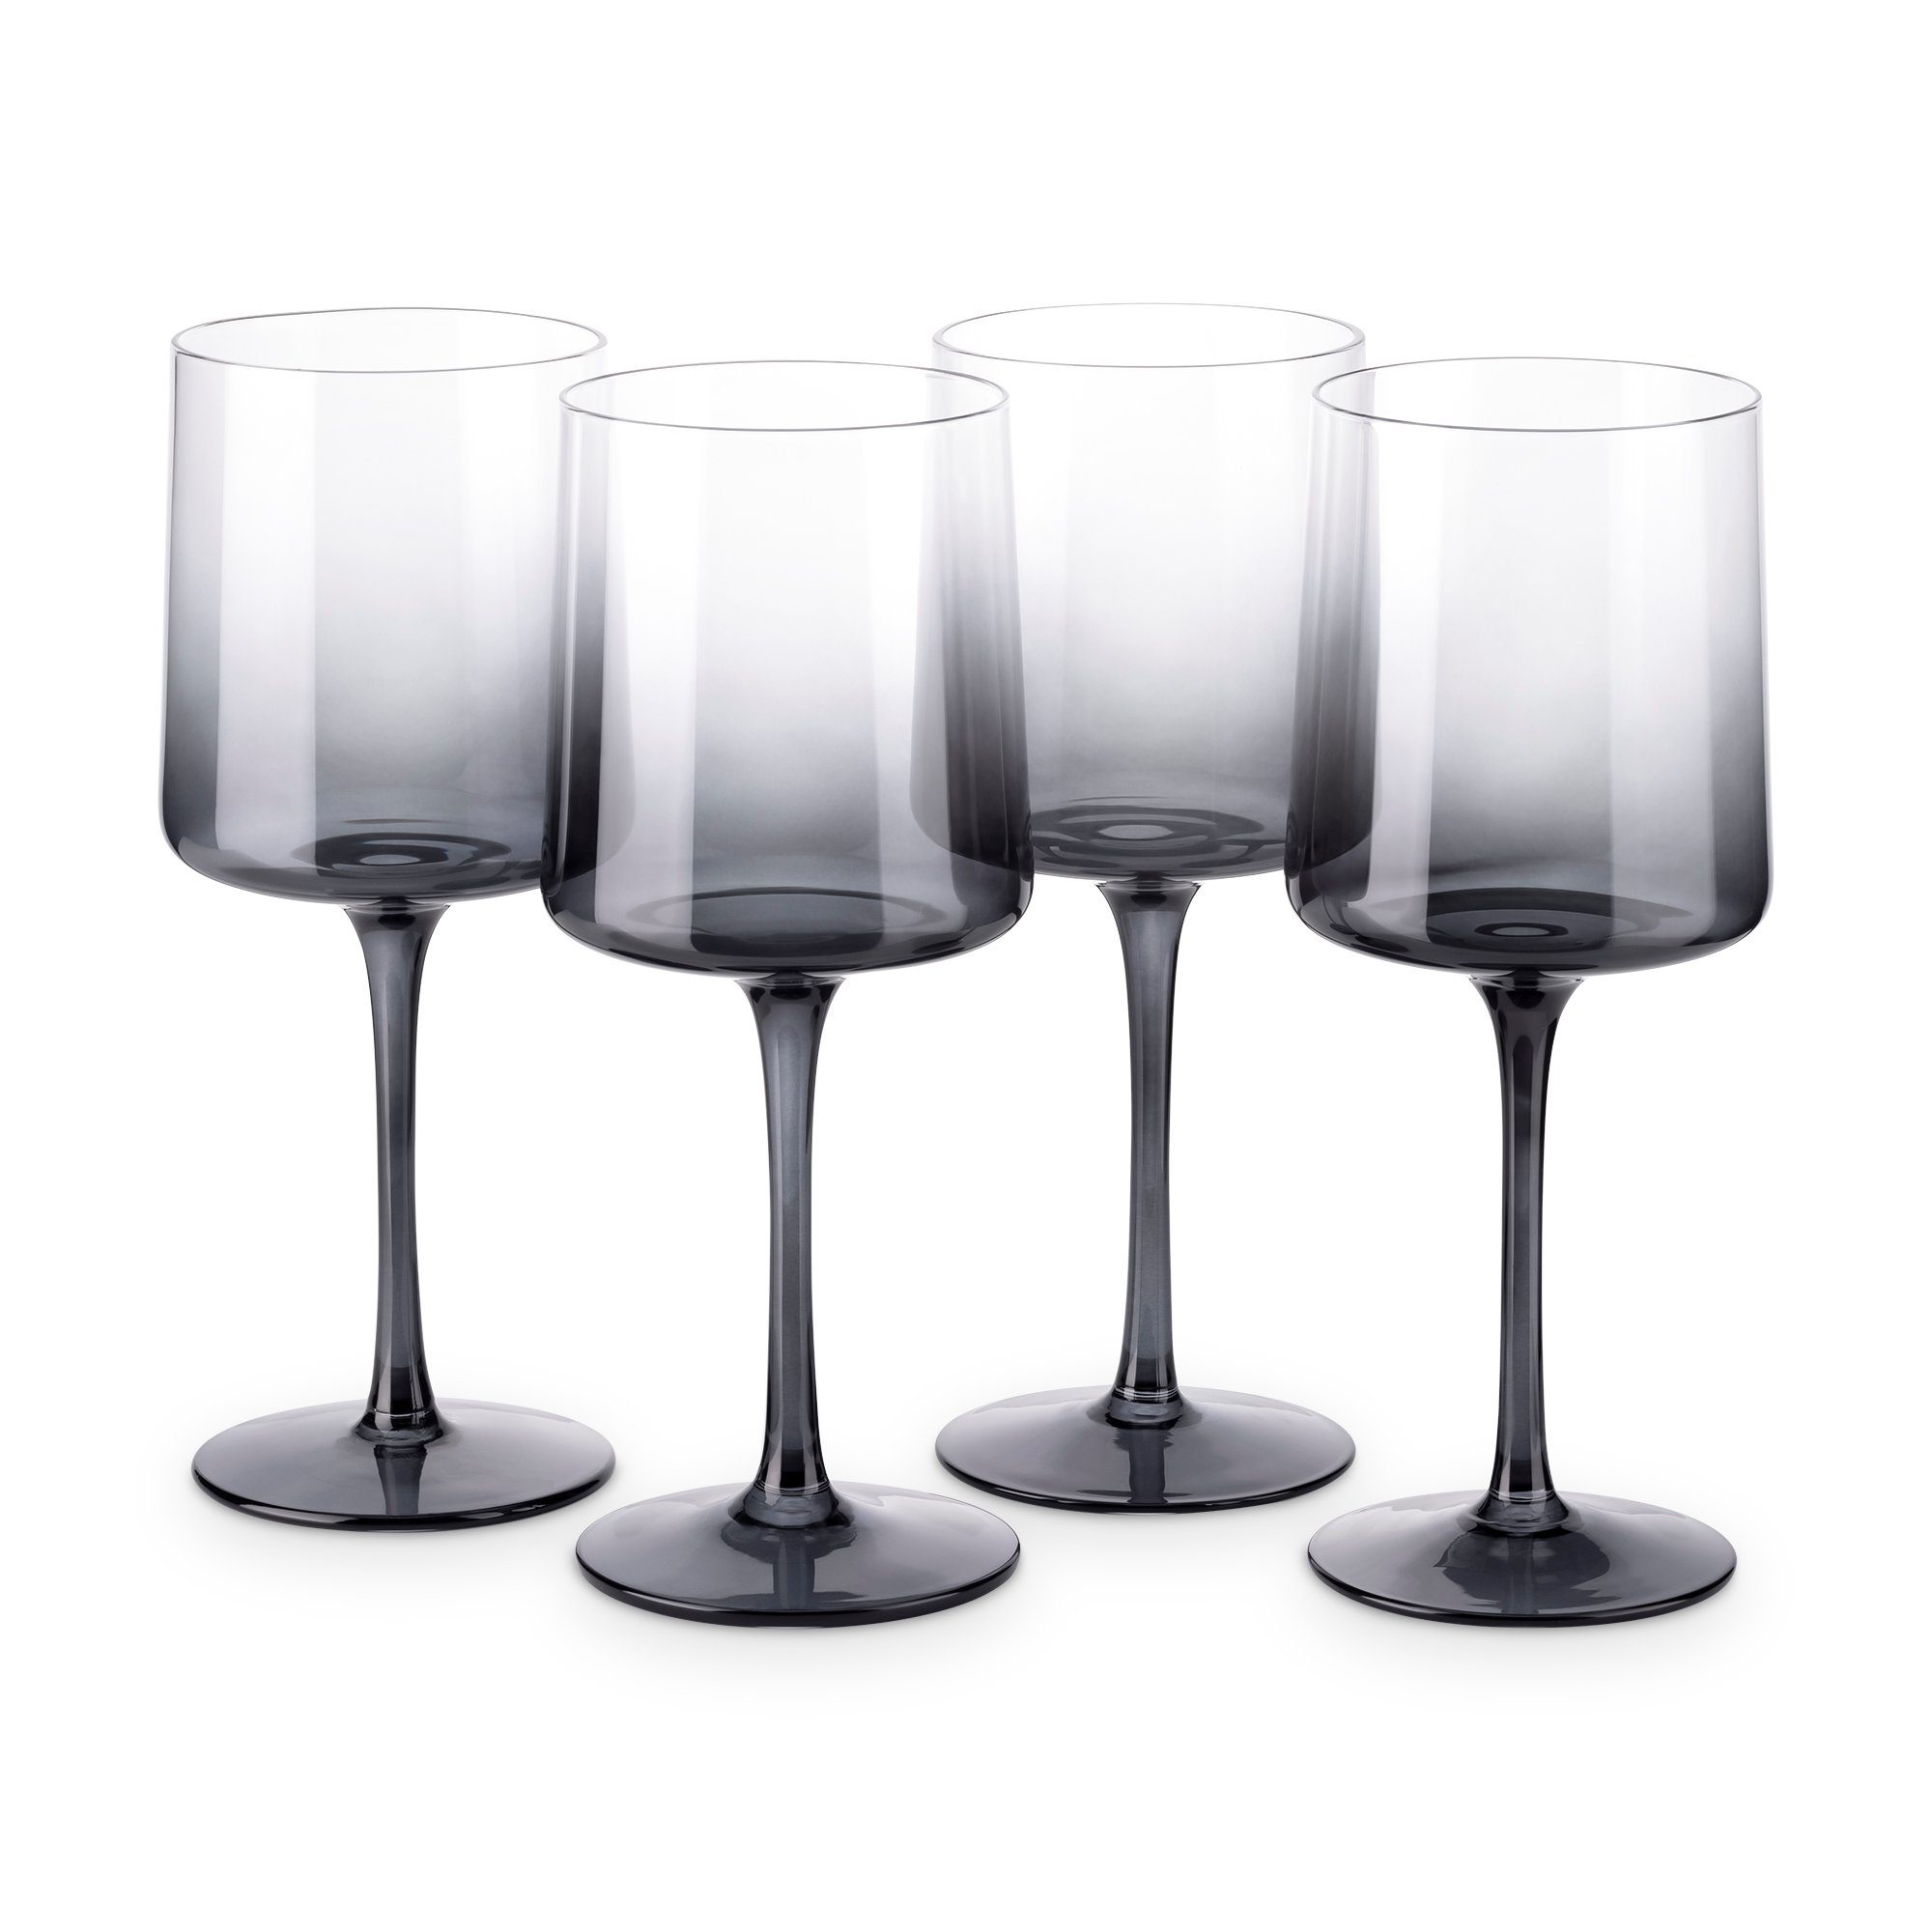 Navaris Weinglas grau getönte Weingläser 4er-Set Farbige Weingläser mit Stiel, Glas